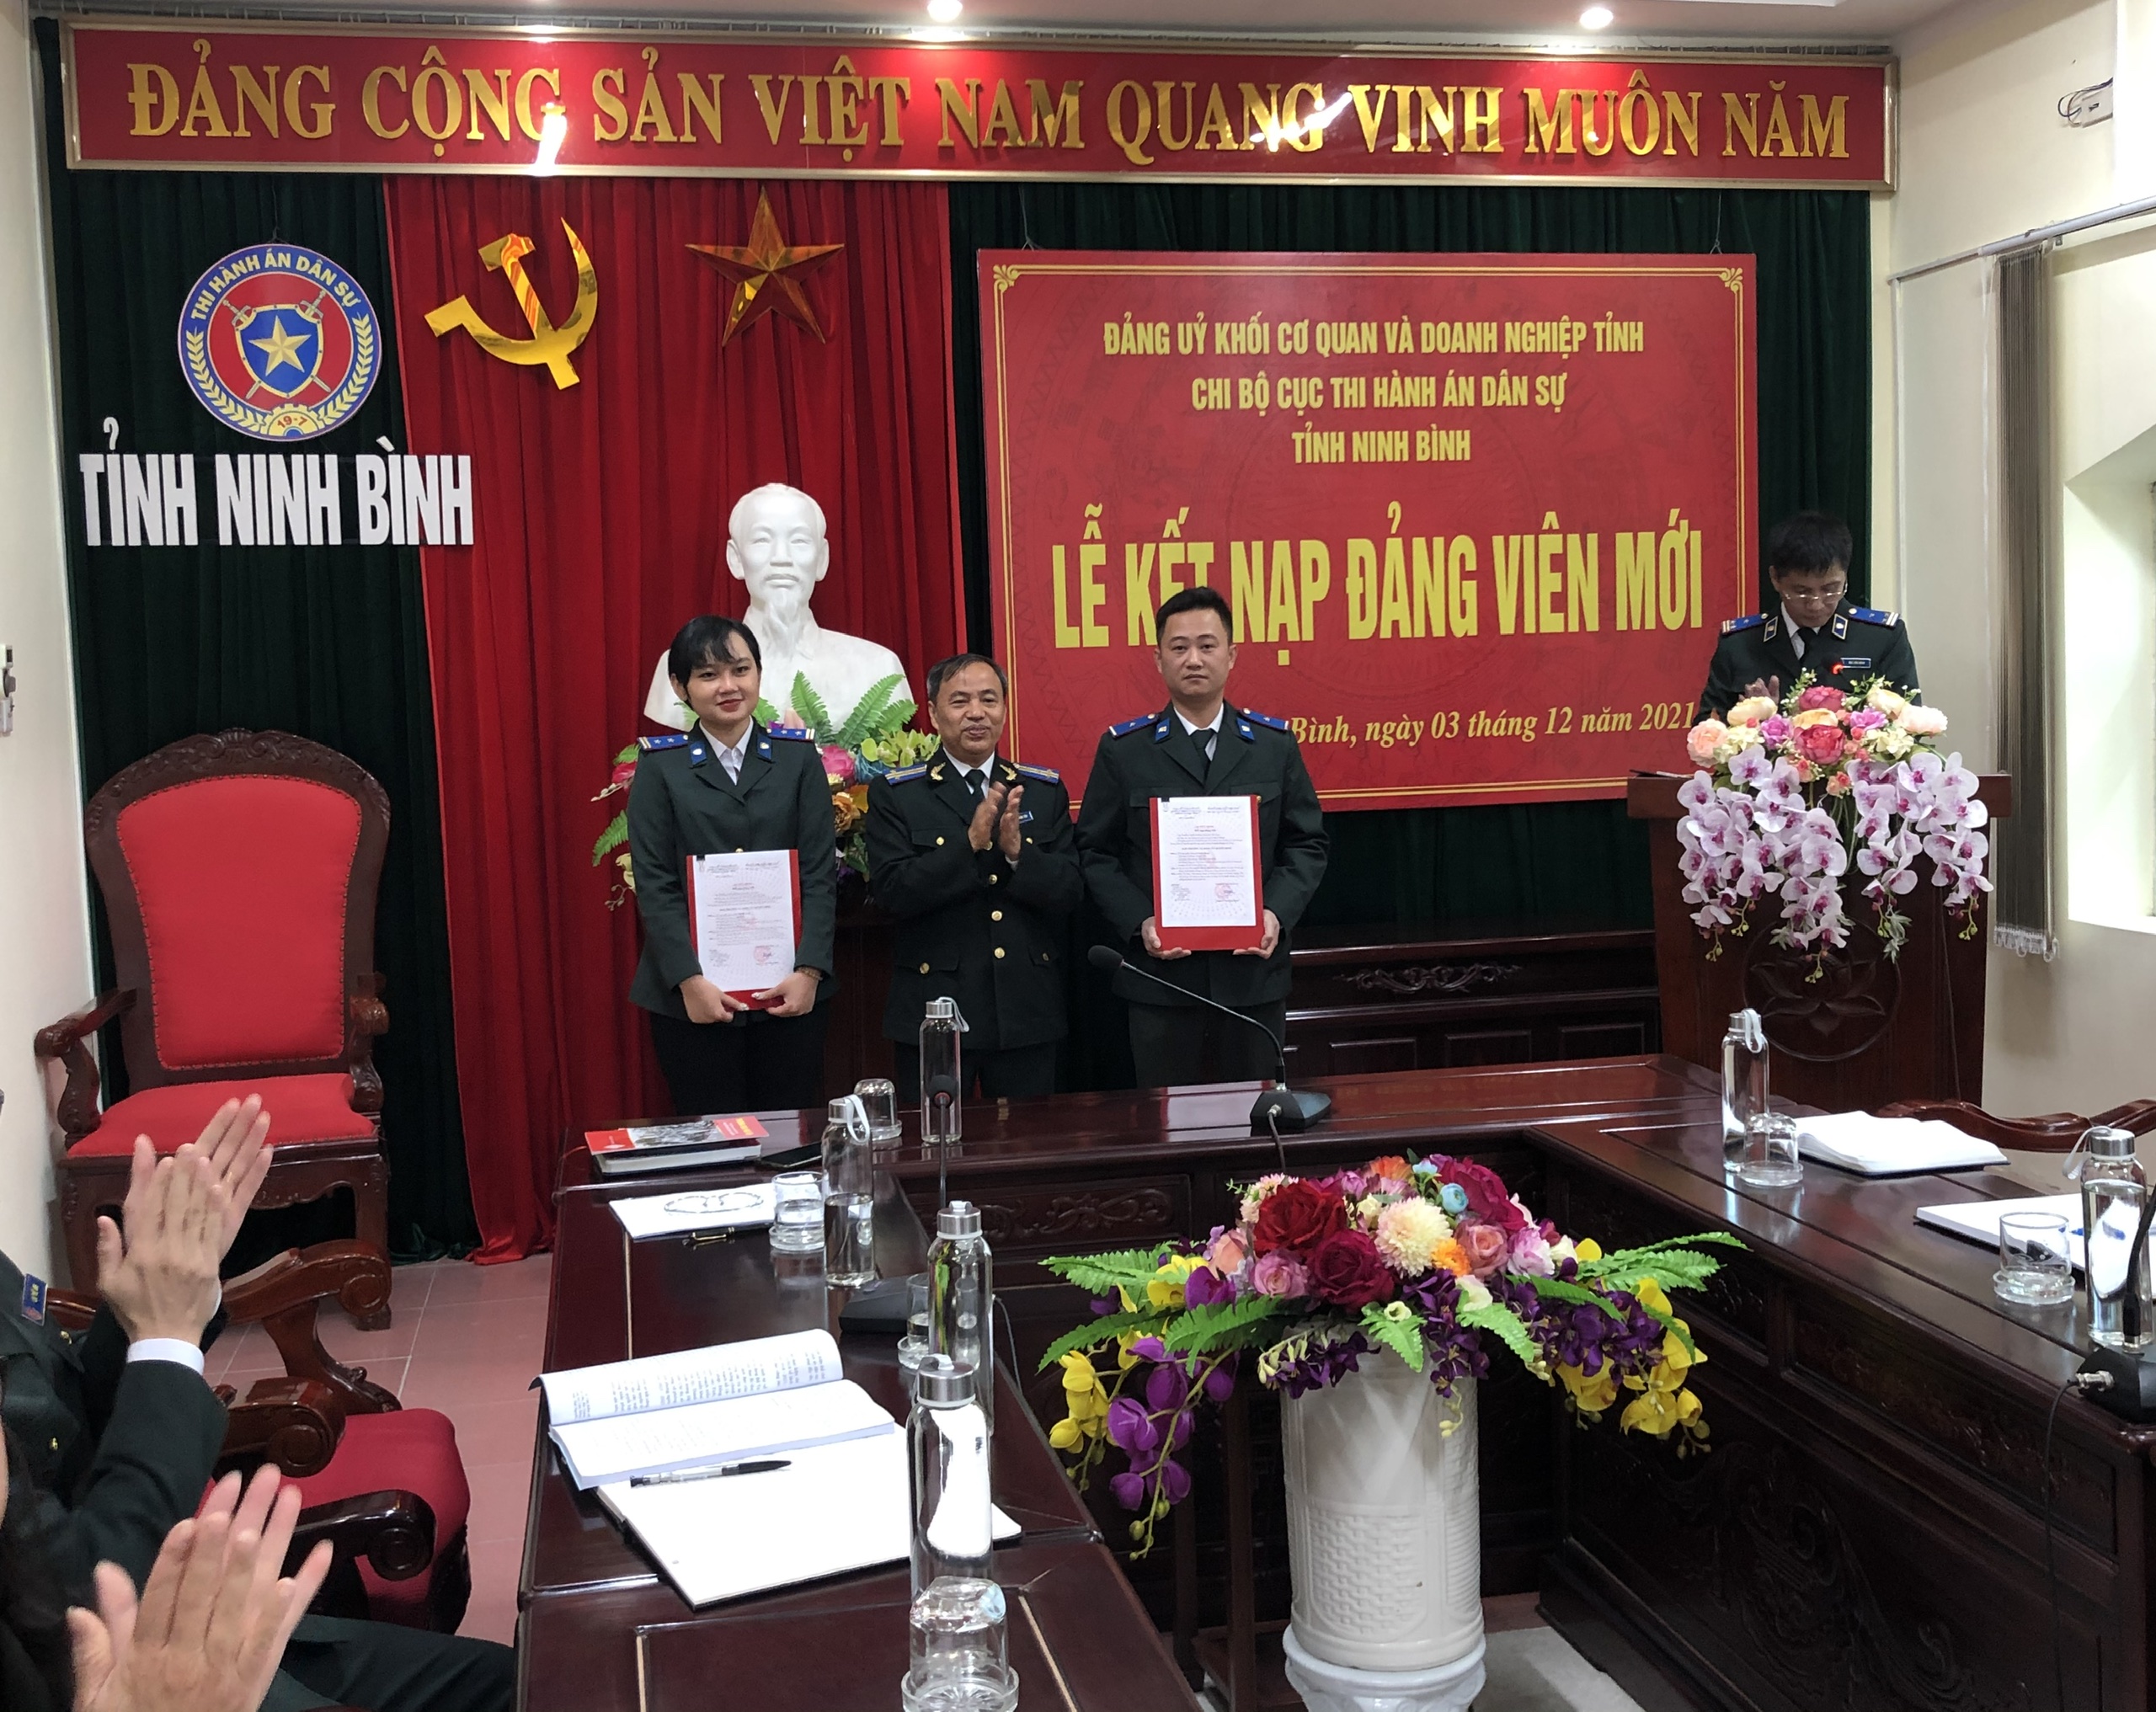 Chi bộ Cục Thi hành án dân sự tỉnh Ninh Bình tổ chức Lễ kết nạp Đảng viên mới